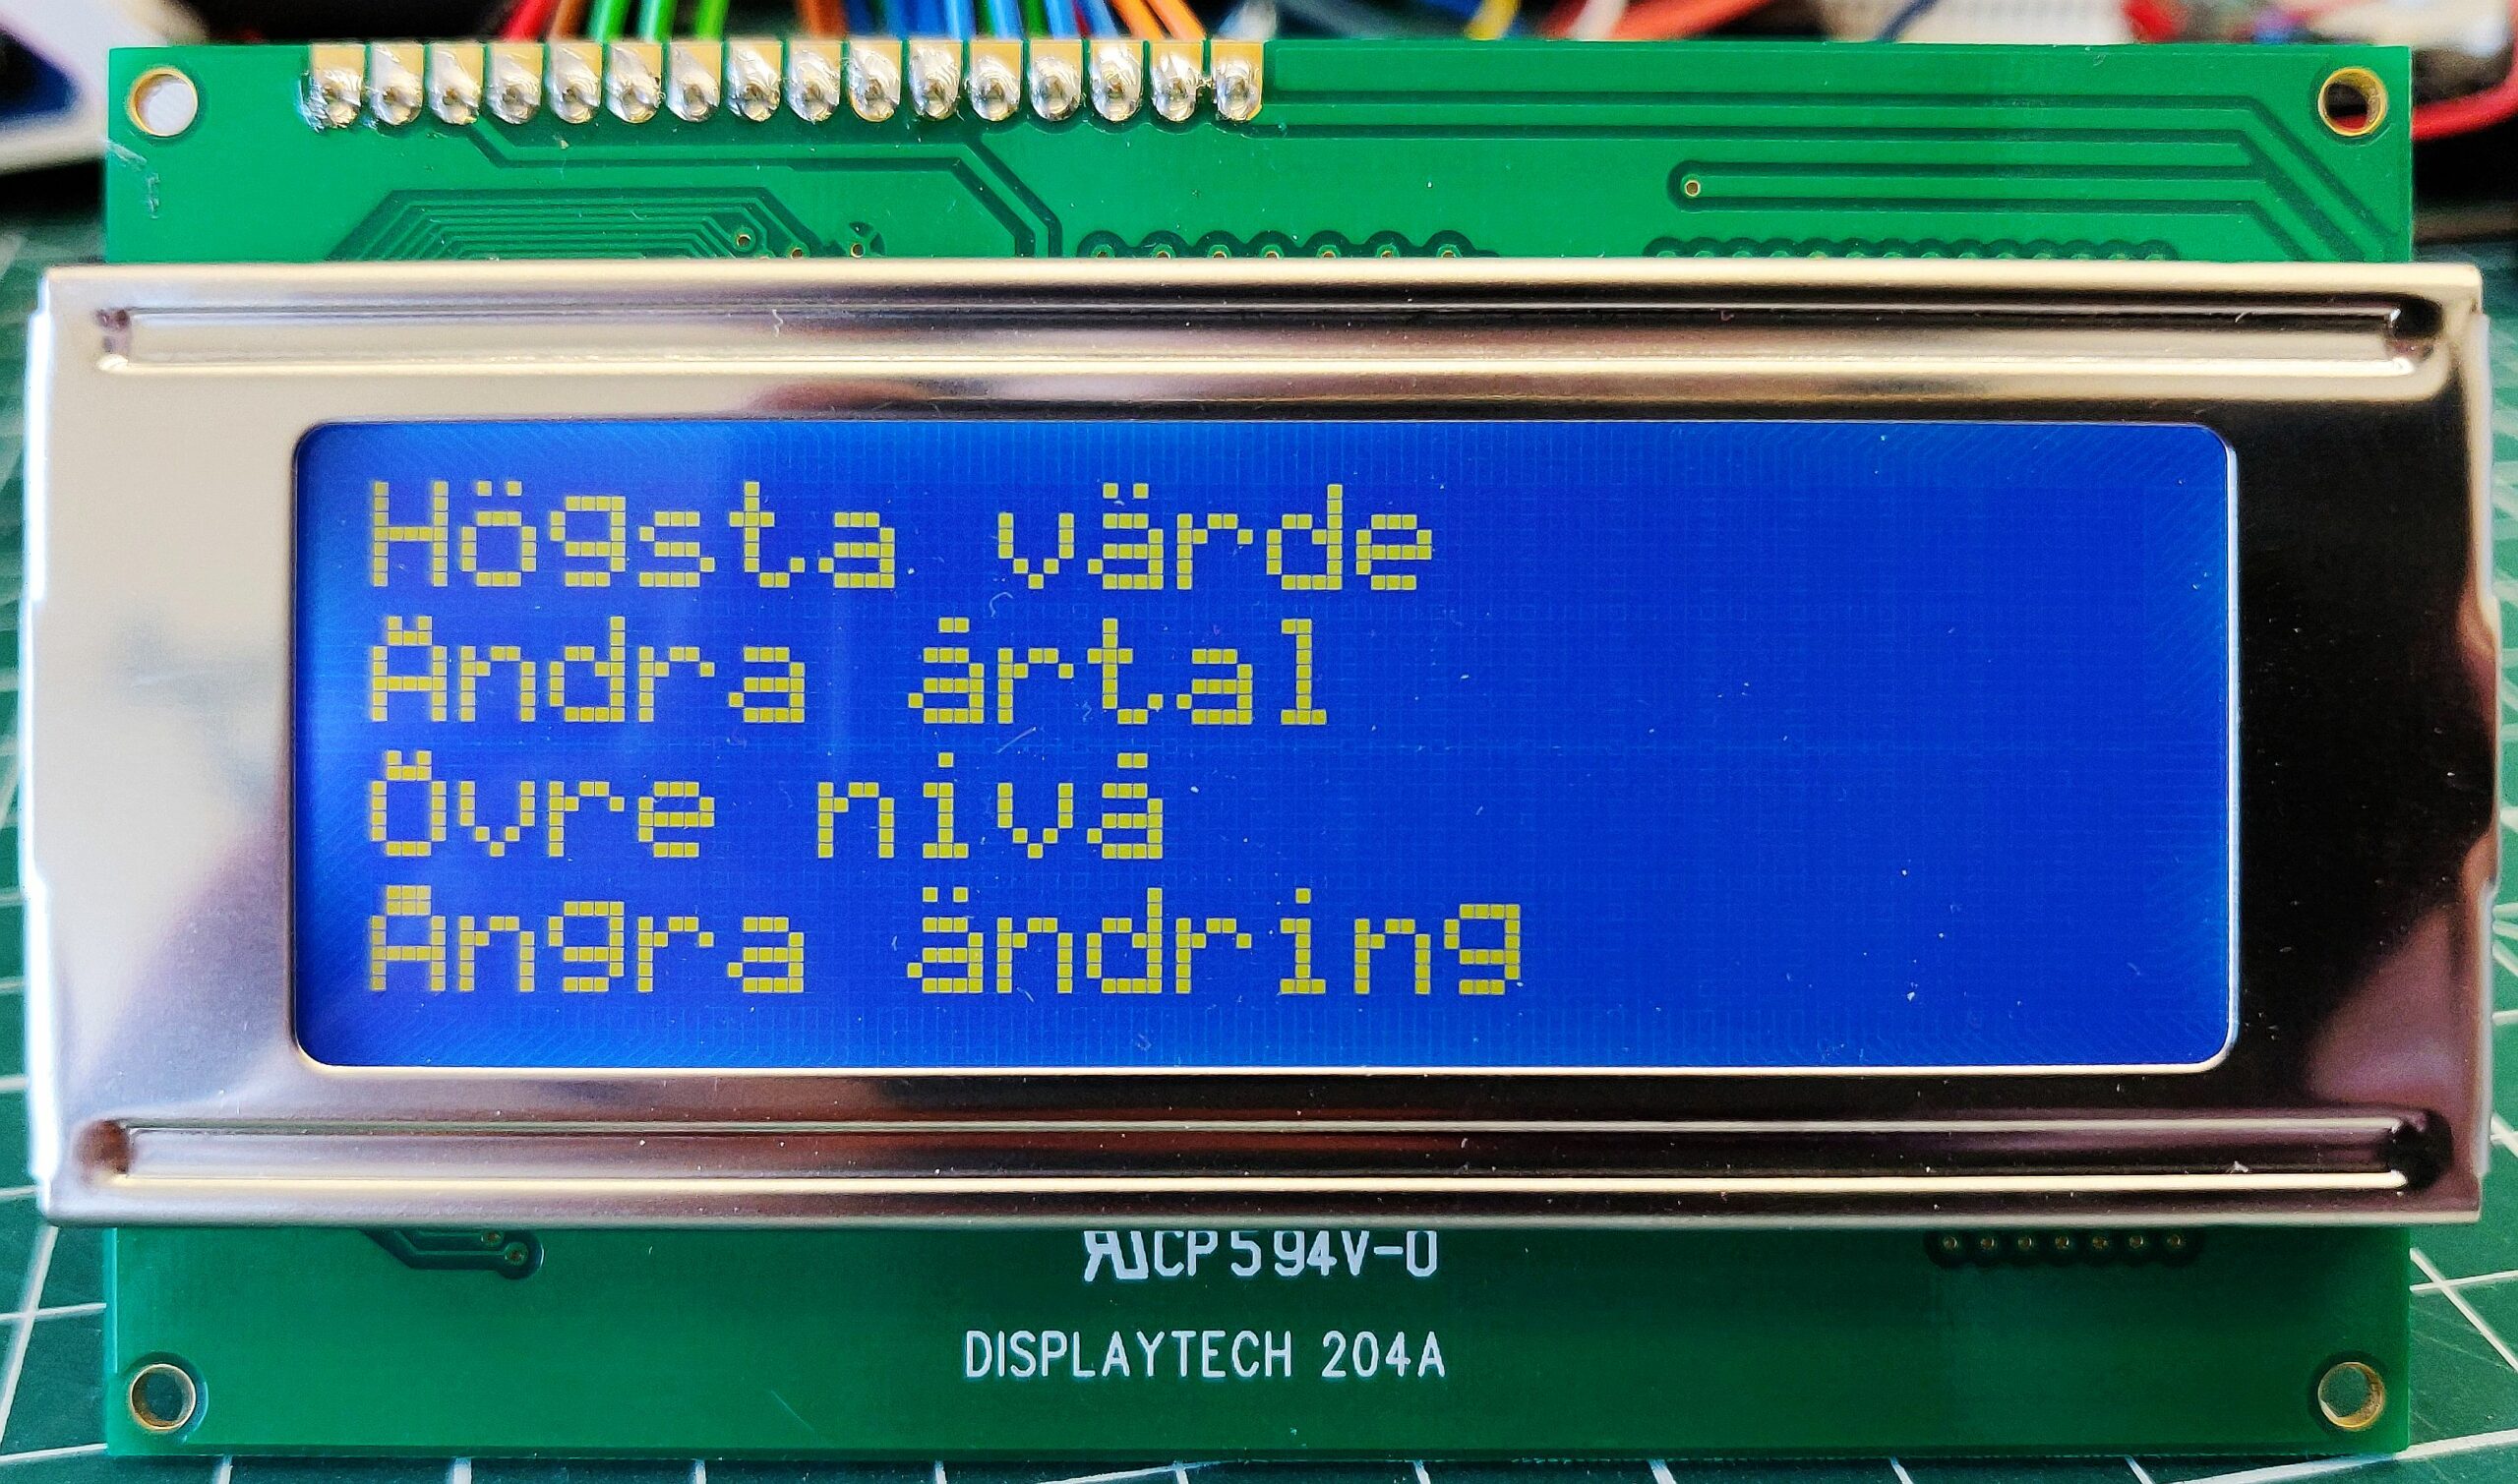 Svenska tecken (åäöÅÄÖ) på text-LCD